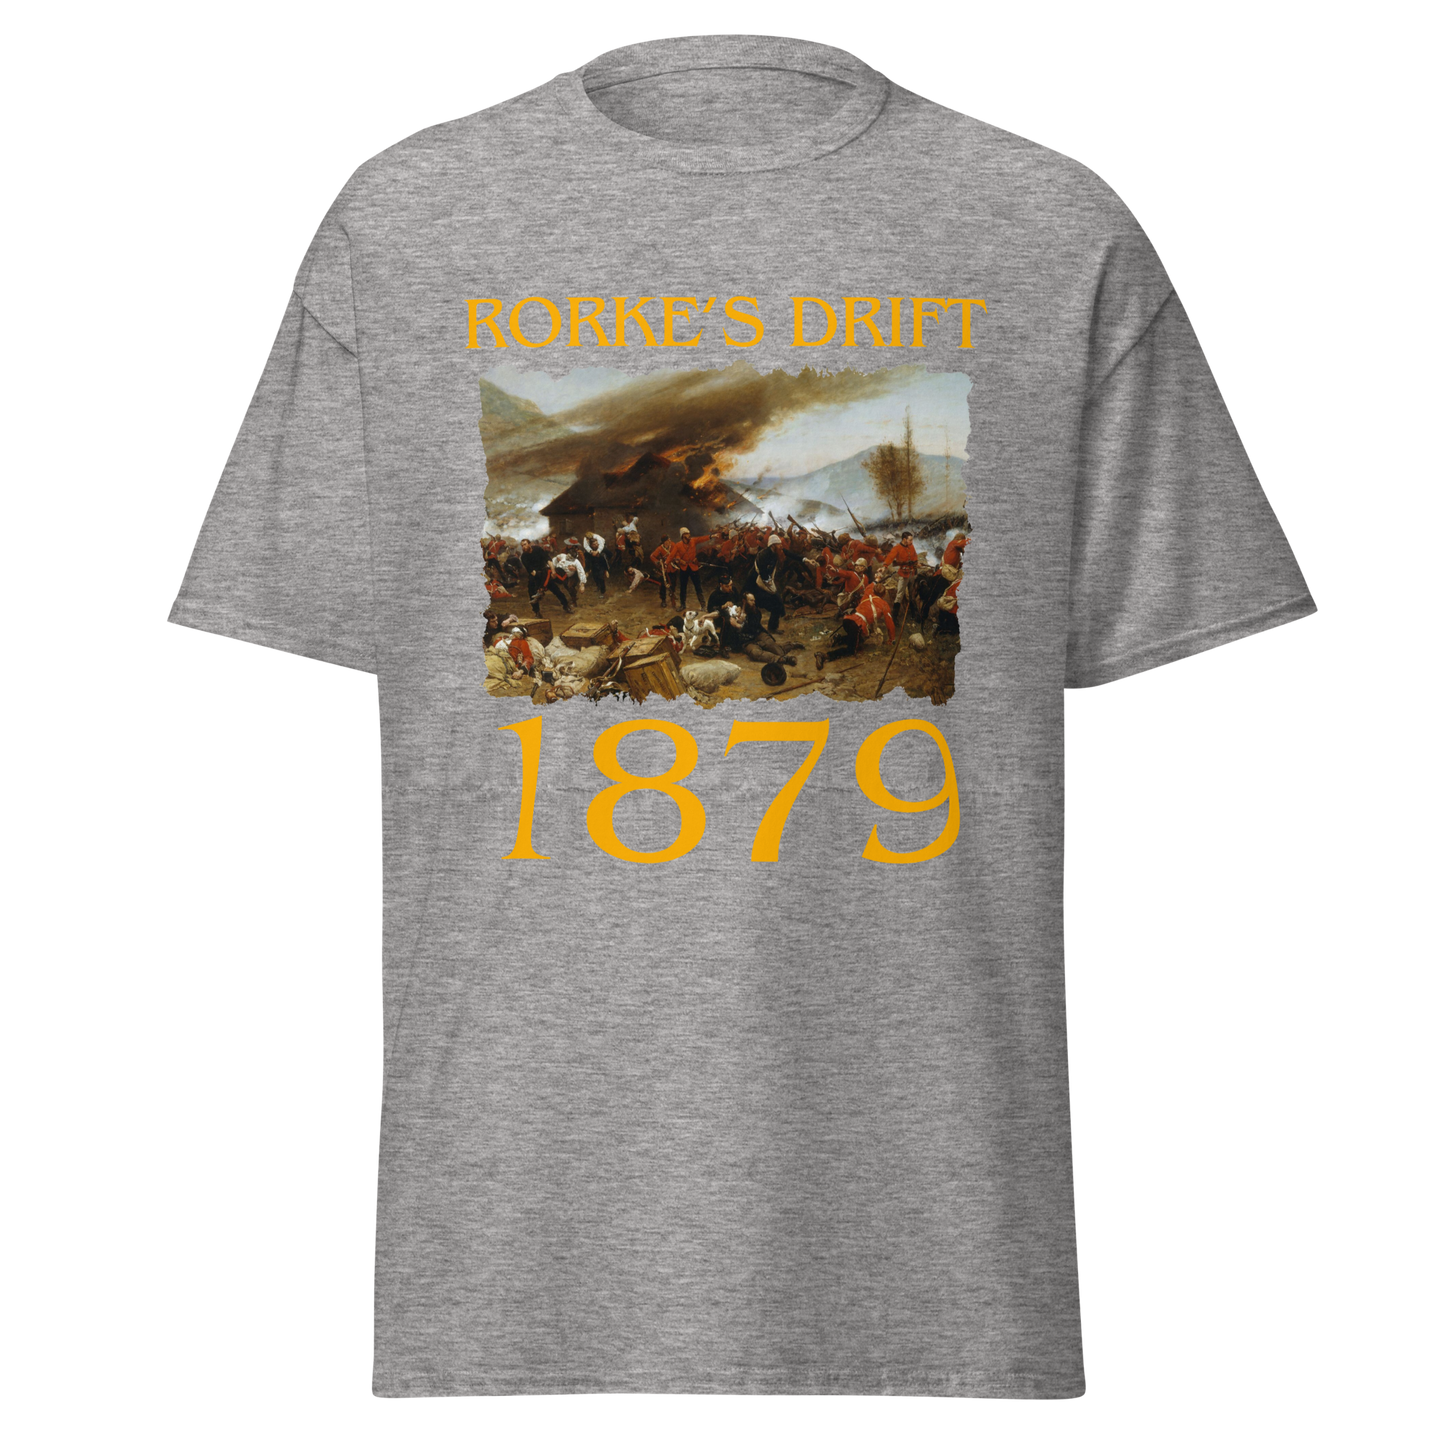 Rorke's Drift 1879 (t-shirt)